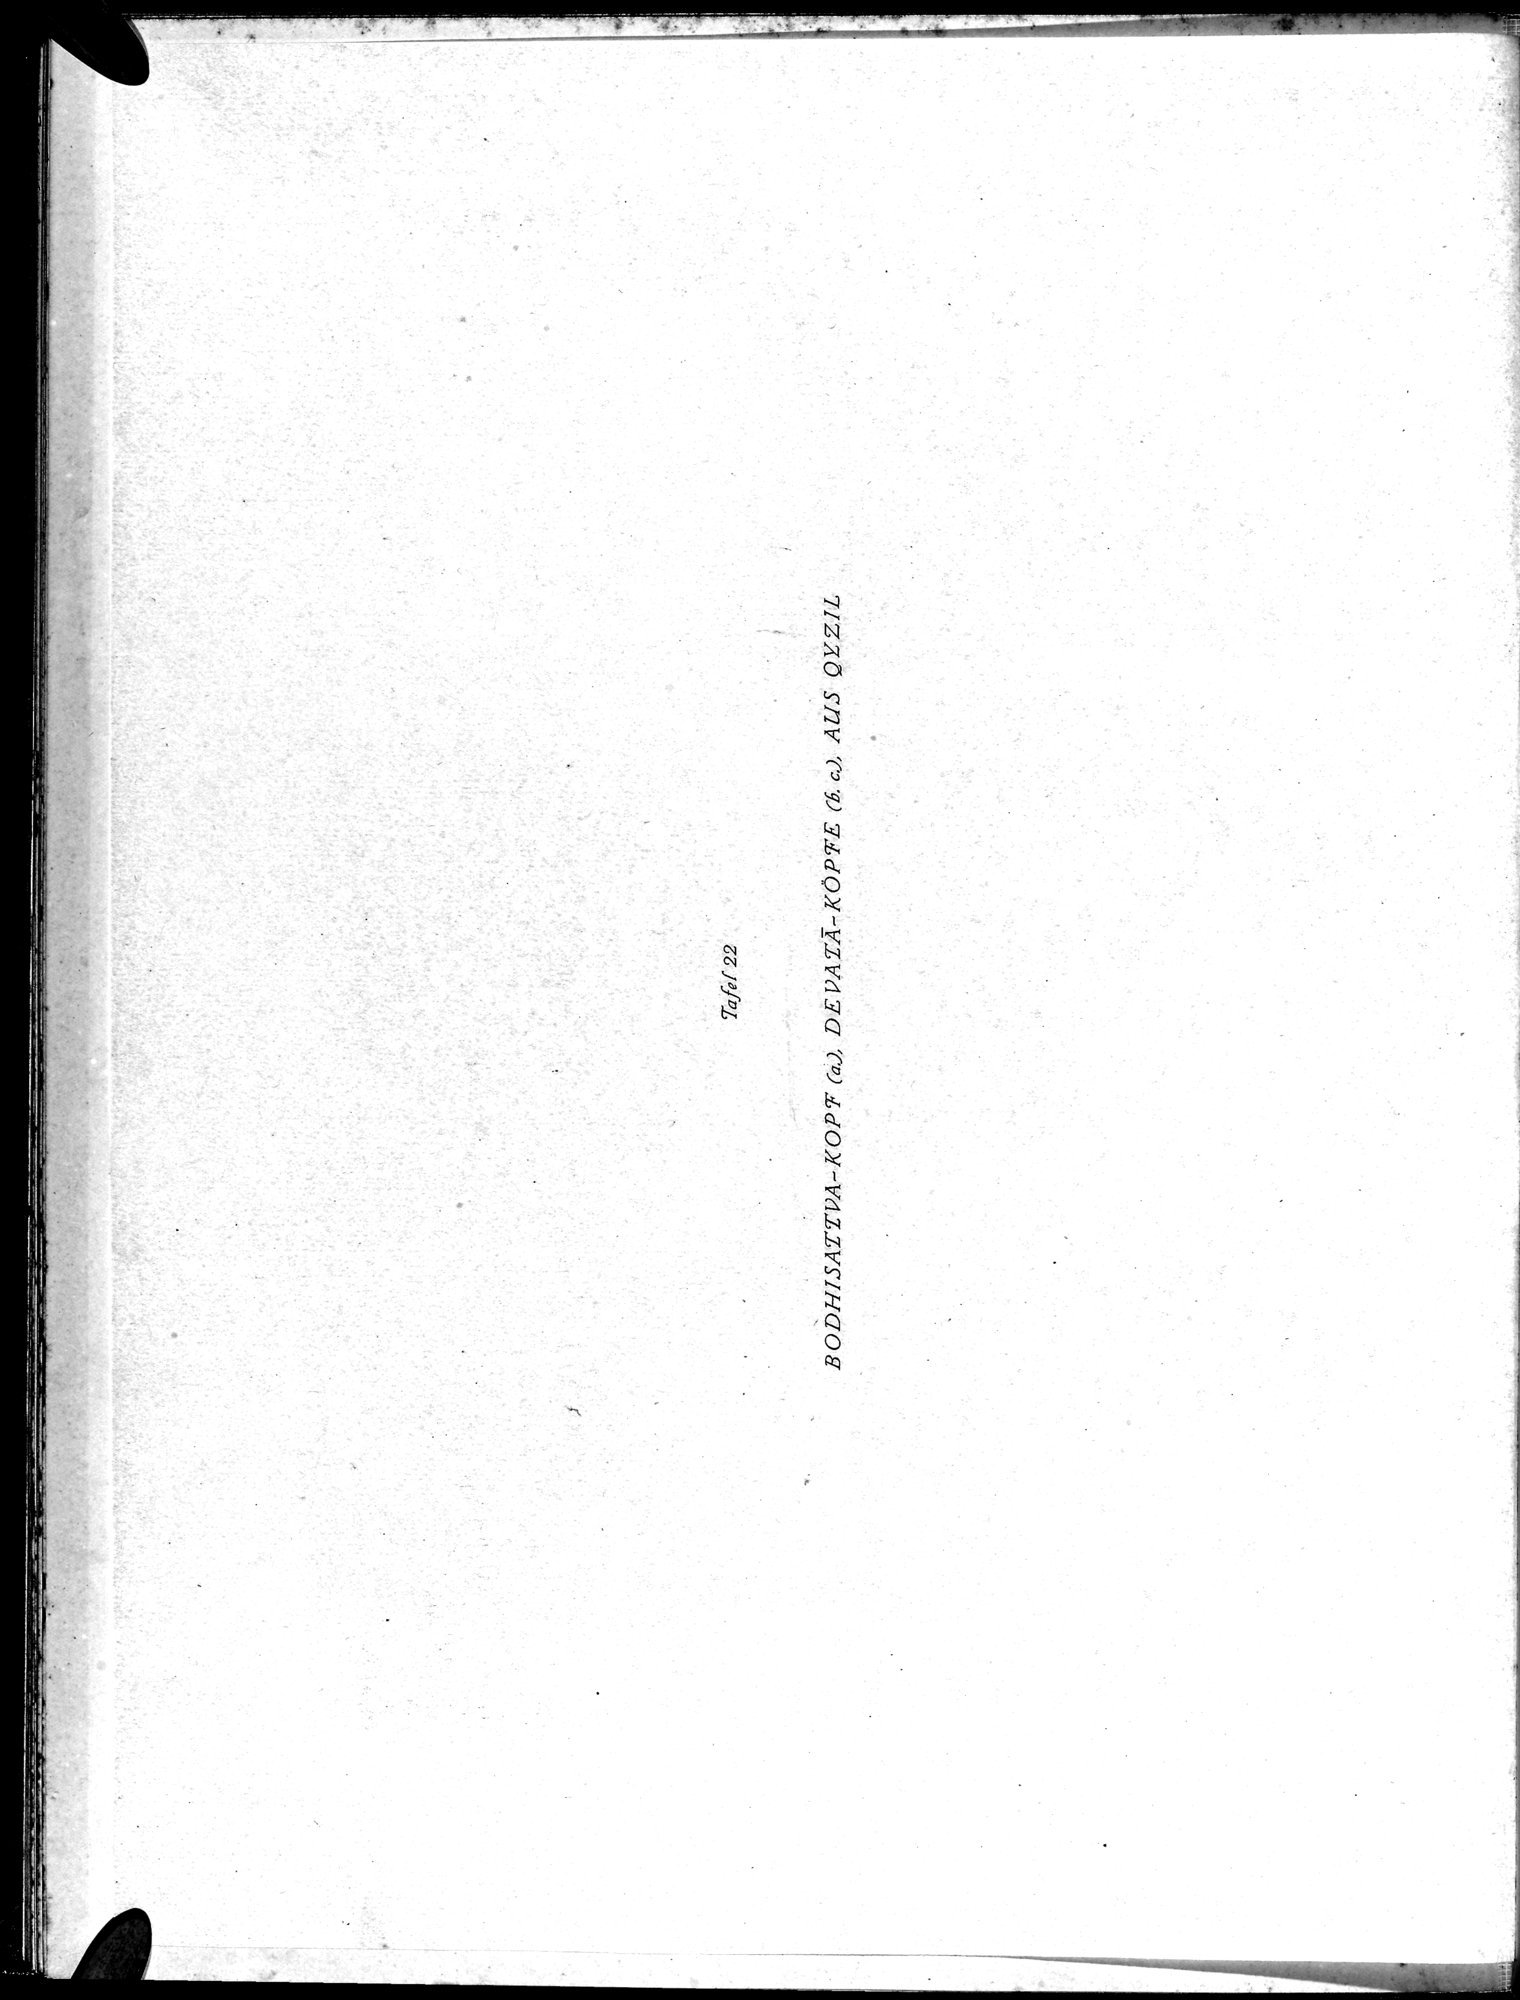 Die Buddhistische Spätantike in Mittelasien : vol.1 / Page 76 (Grayscale High Resolution Image)